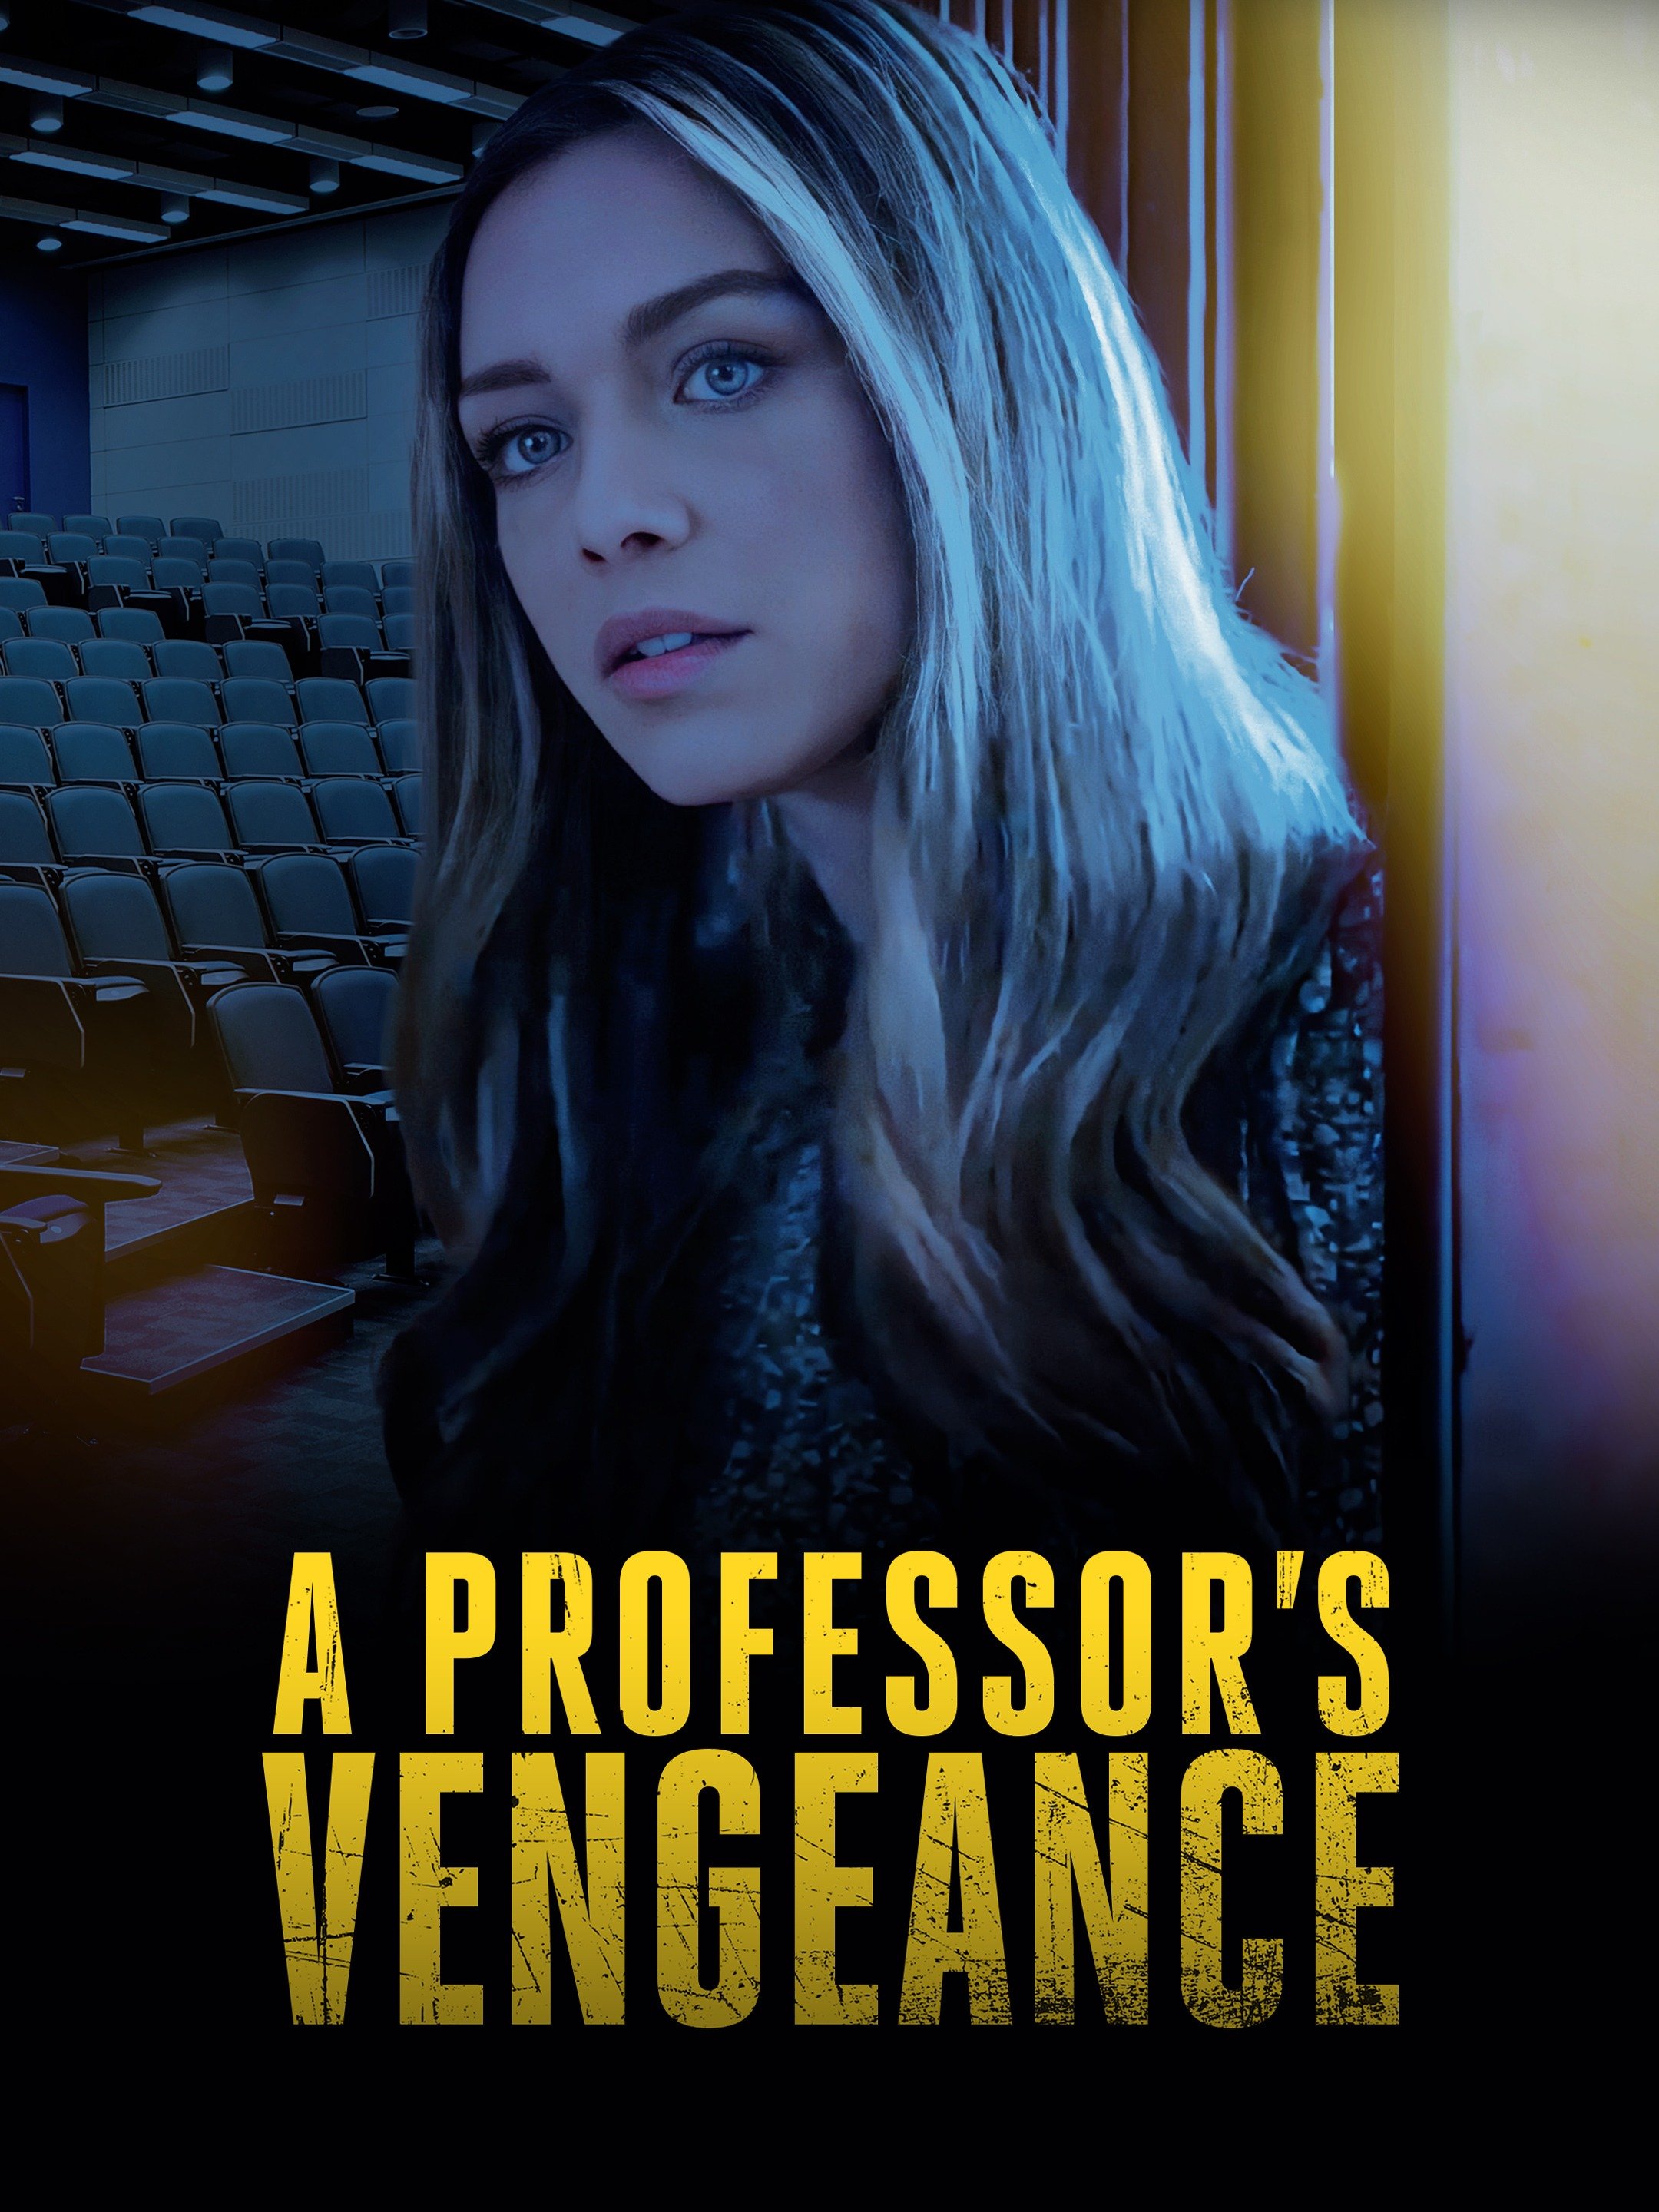 A professor's vengeance full movie